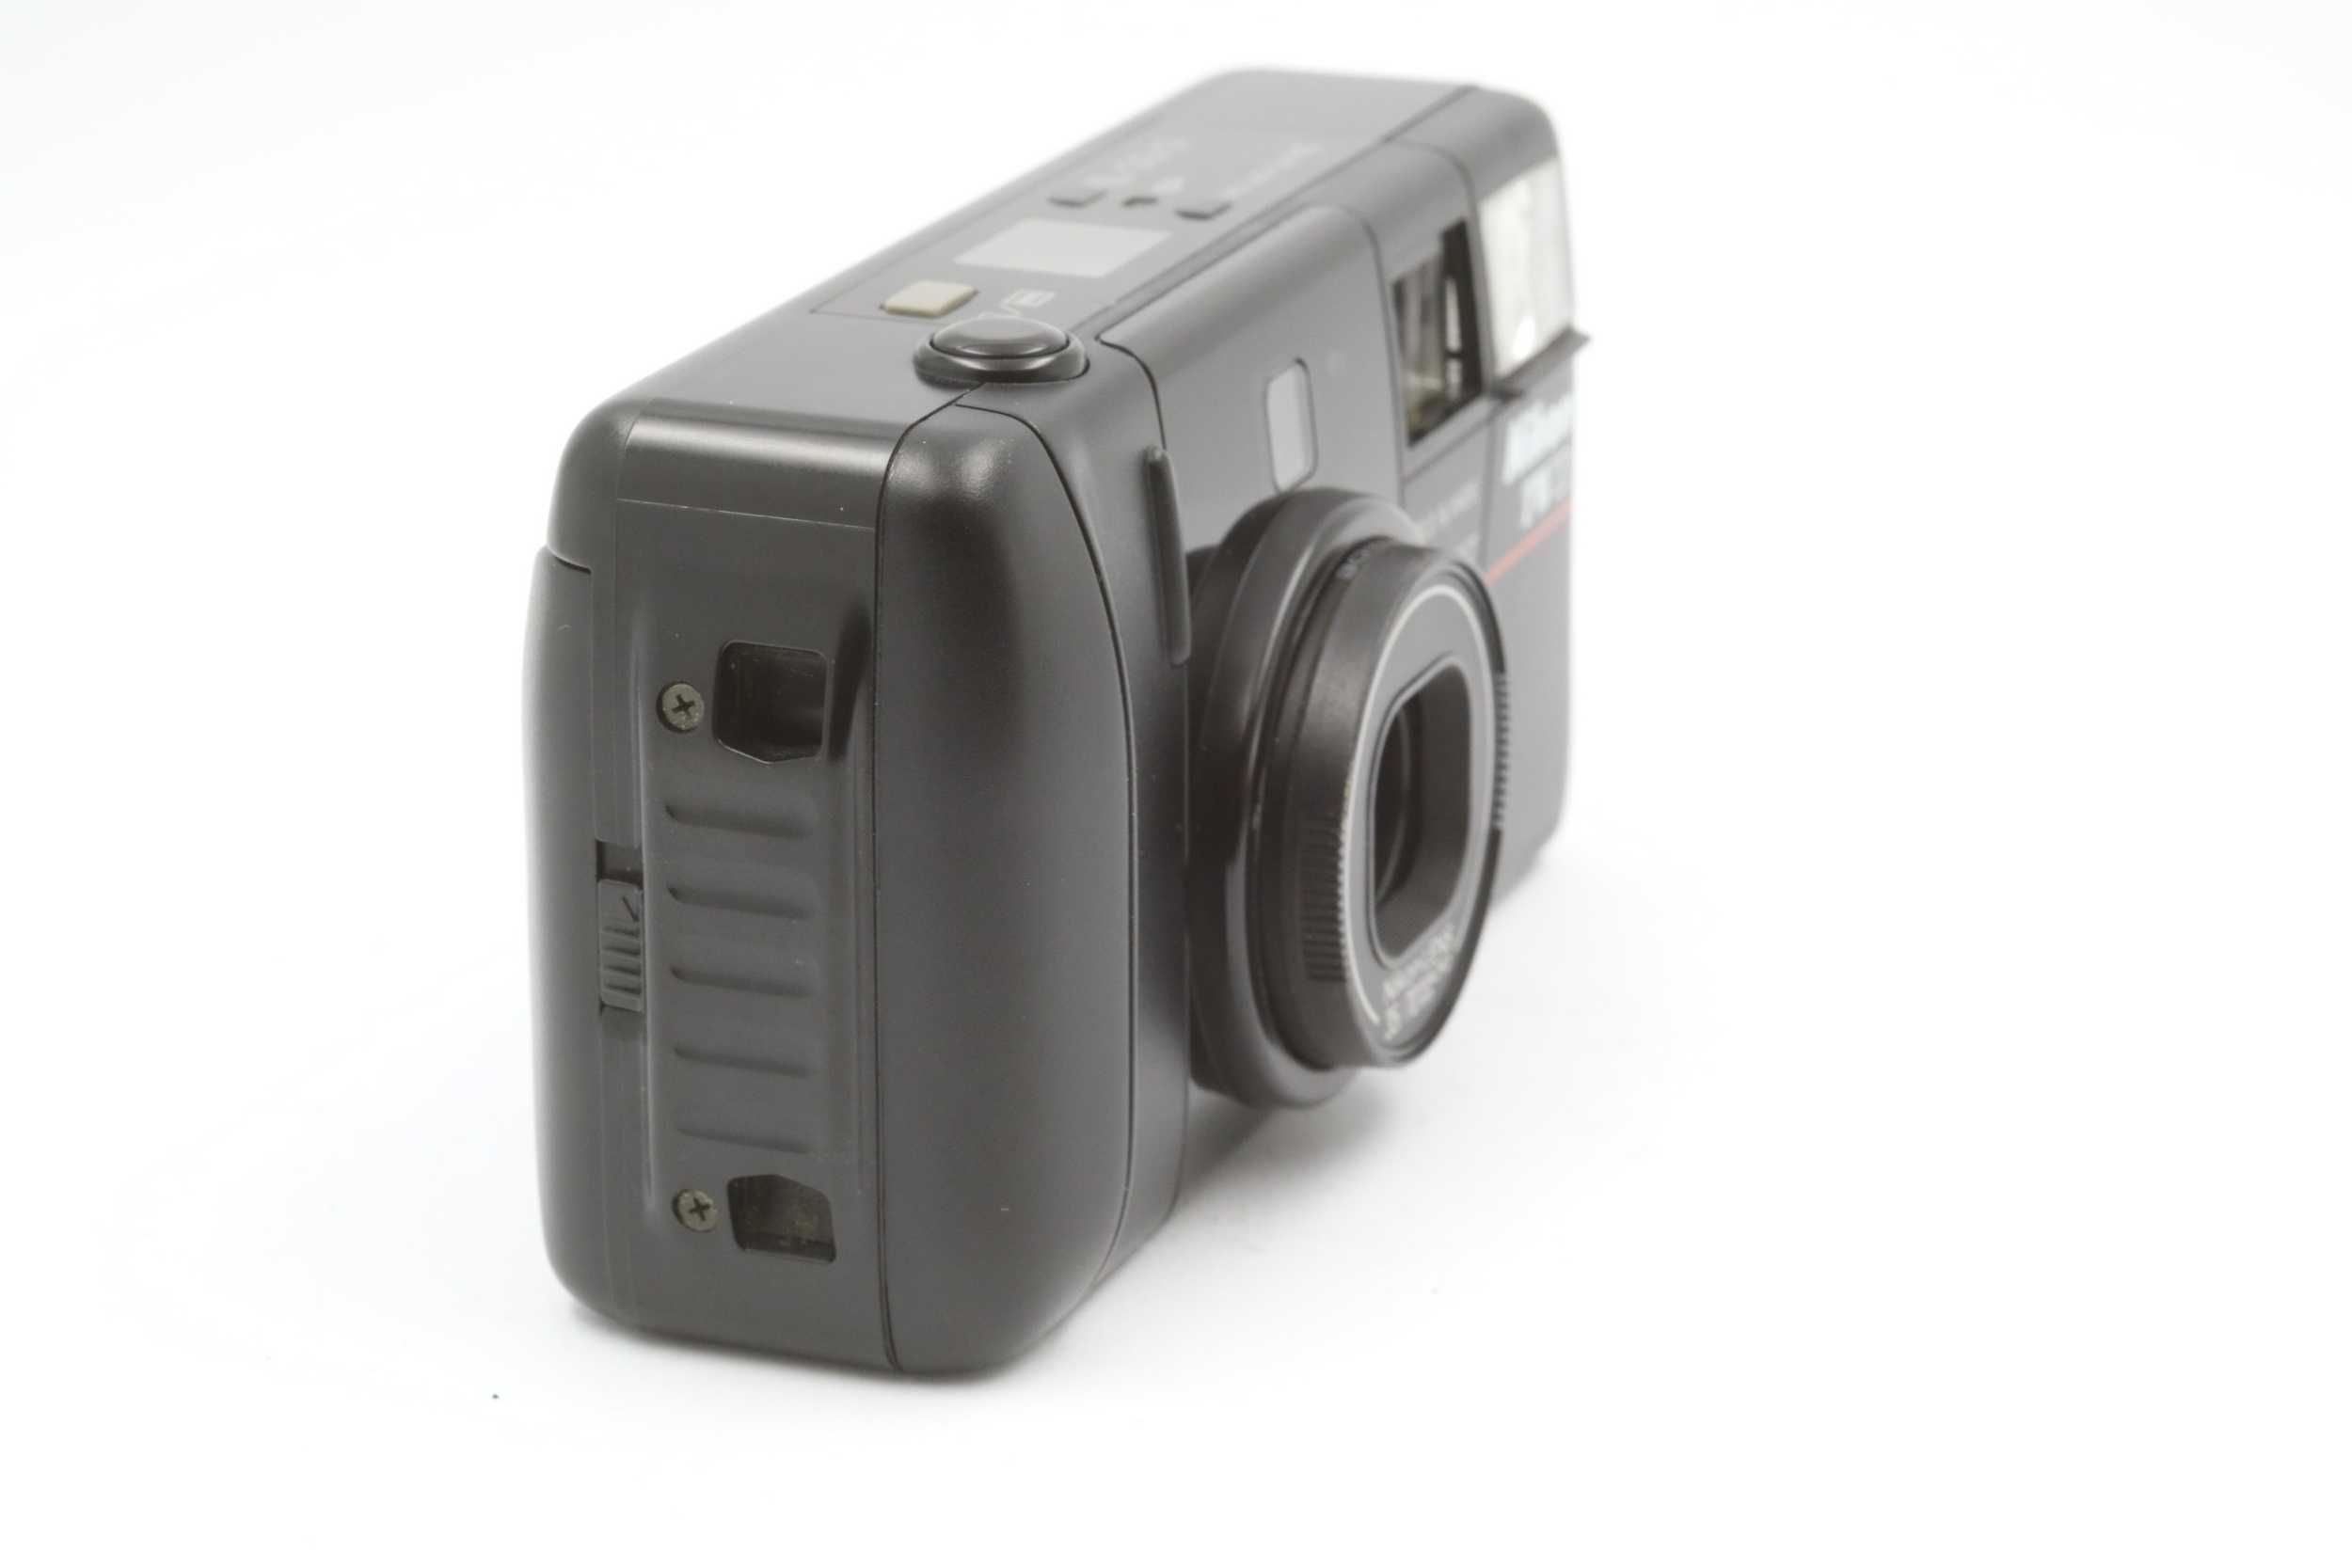 Плівкова камера Nikon TW2D